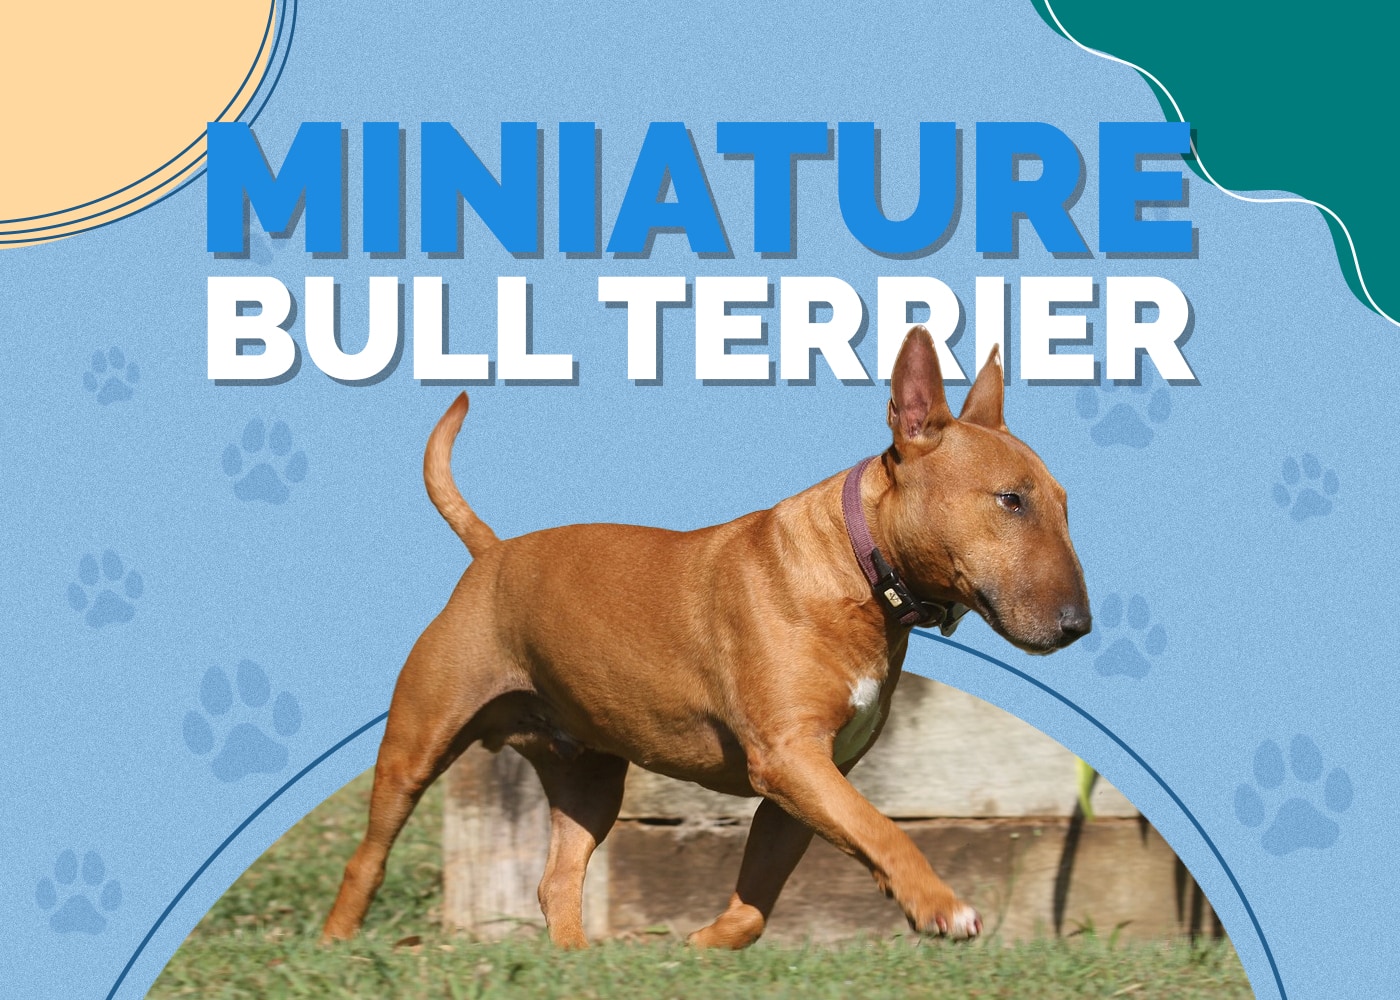 Miniature Bull Terrier Dog